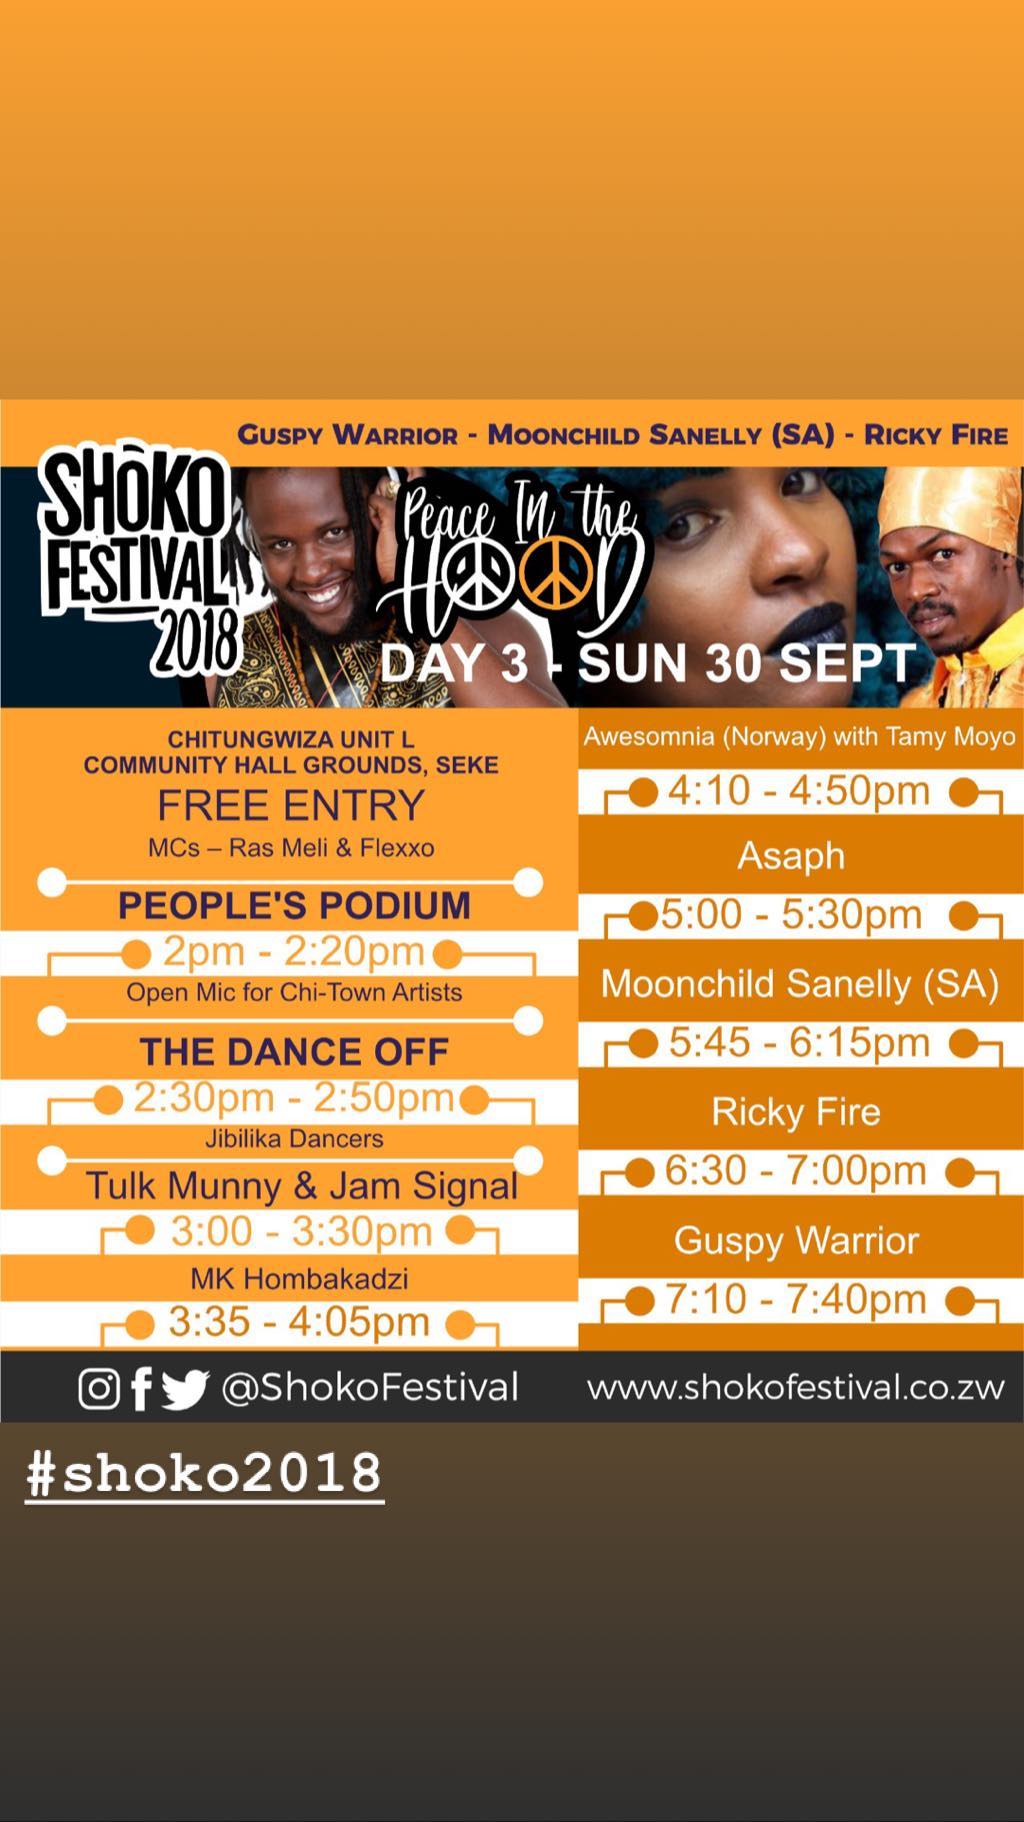 Shoko Festival 2018 and Zimbabwe Cholera Outbreak (IMG 3).jpg